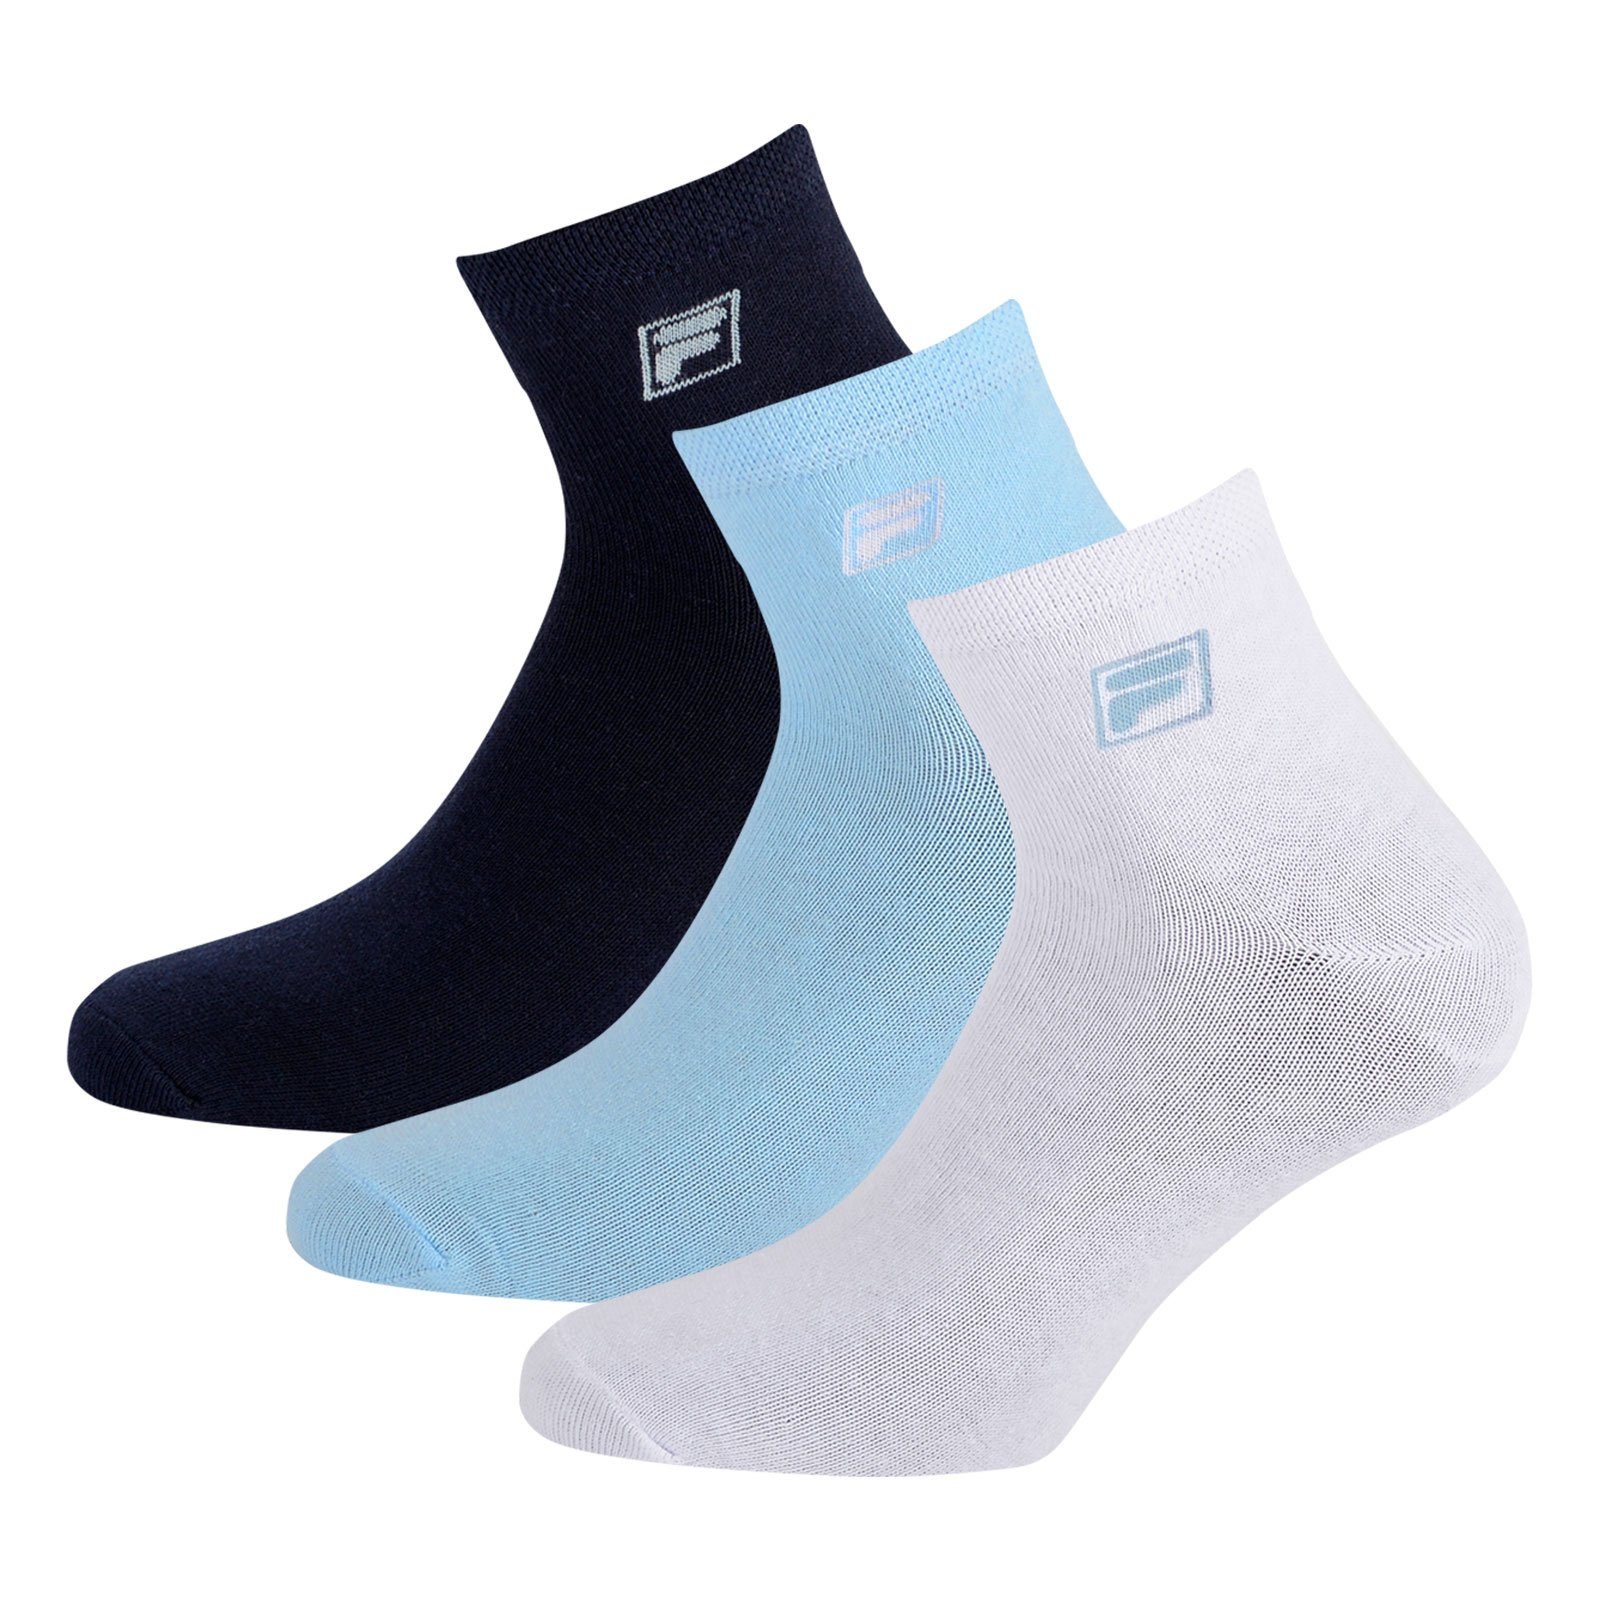 Fila Sportsocken Quarter (6-Paar) light / Socken blue Piquebund / navy mit 821 white elastischem